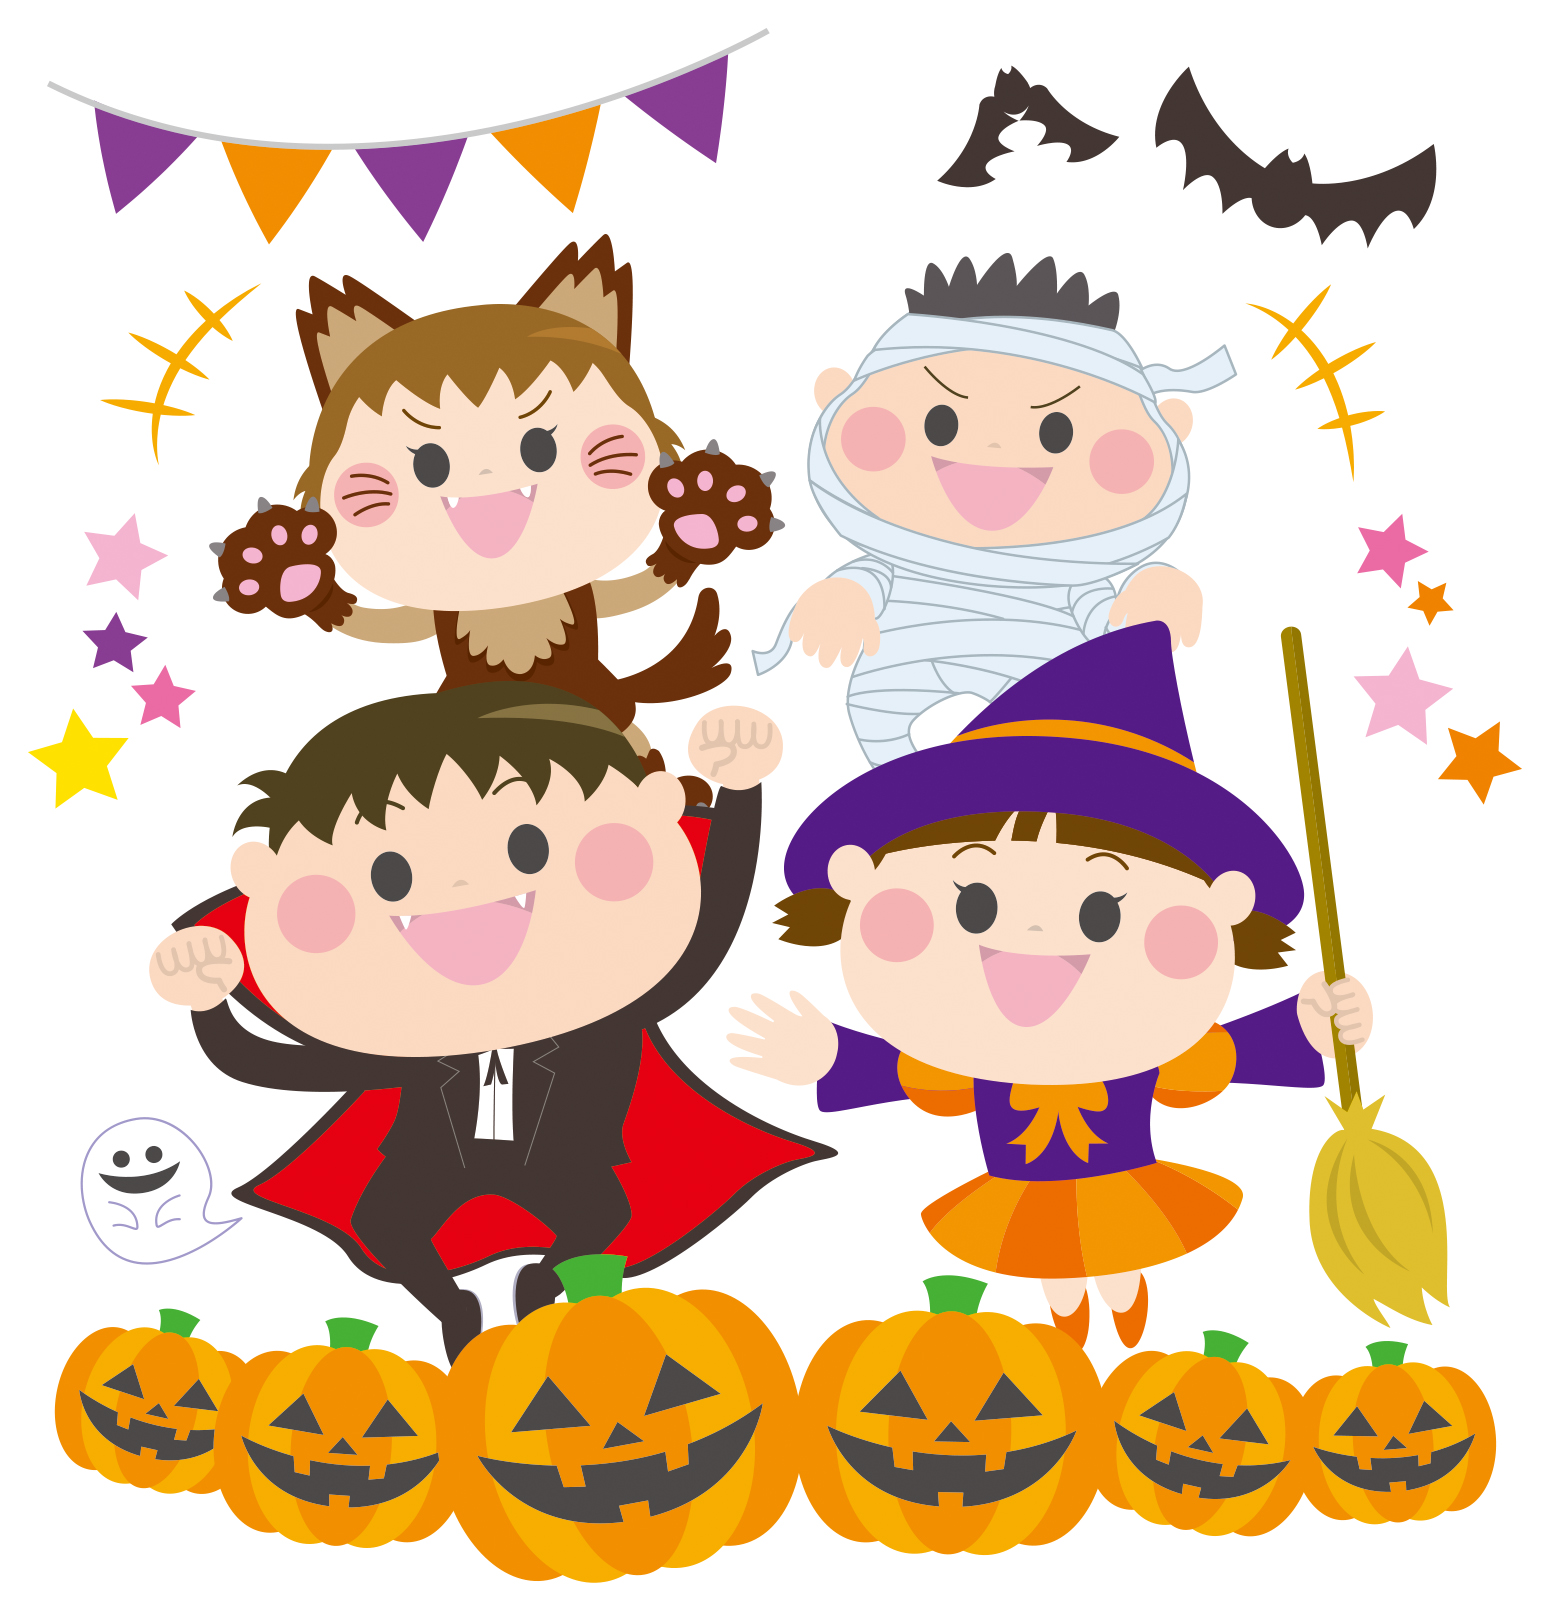 《10月20日》ハロウィングッズやお菓子を当てよう♪フェリエ南草津で「ハロウィン抽選会」が開催！